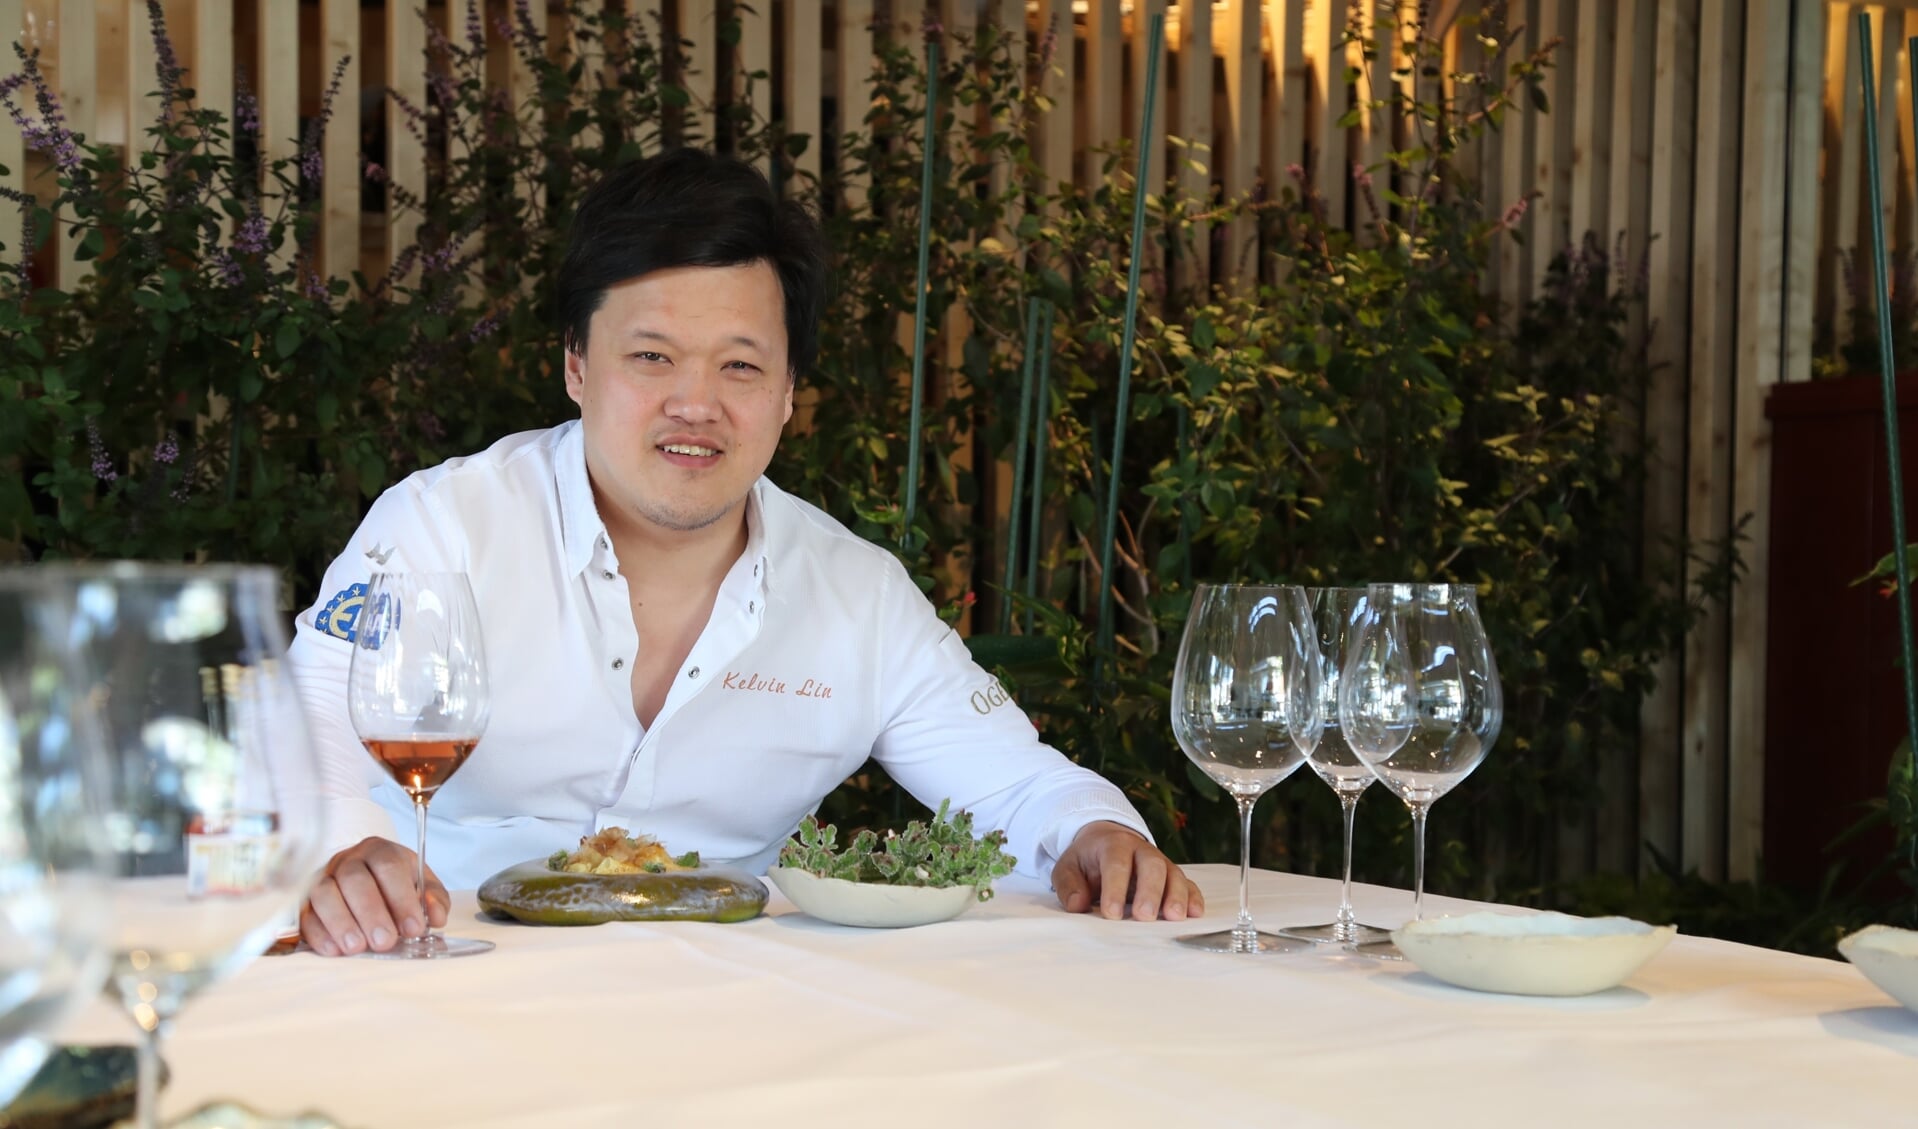 Chef Kelvin Lin opent op 4 juni een uniek ‘one table restaurant’ in Nayolie op het Kerkplein. Foto: Michiel van der Spek